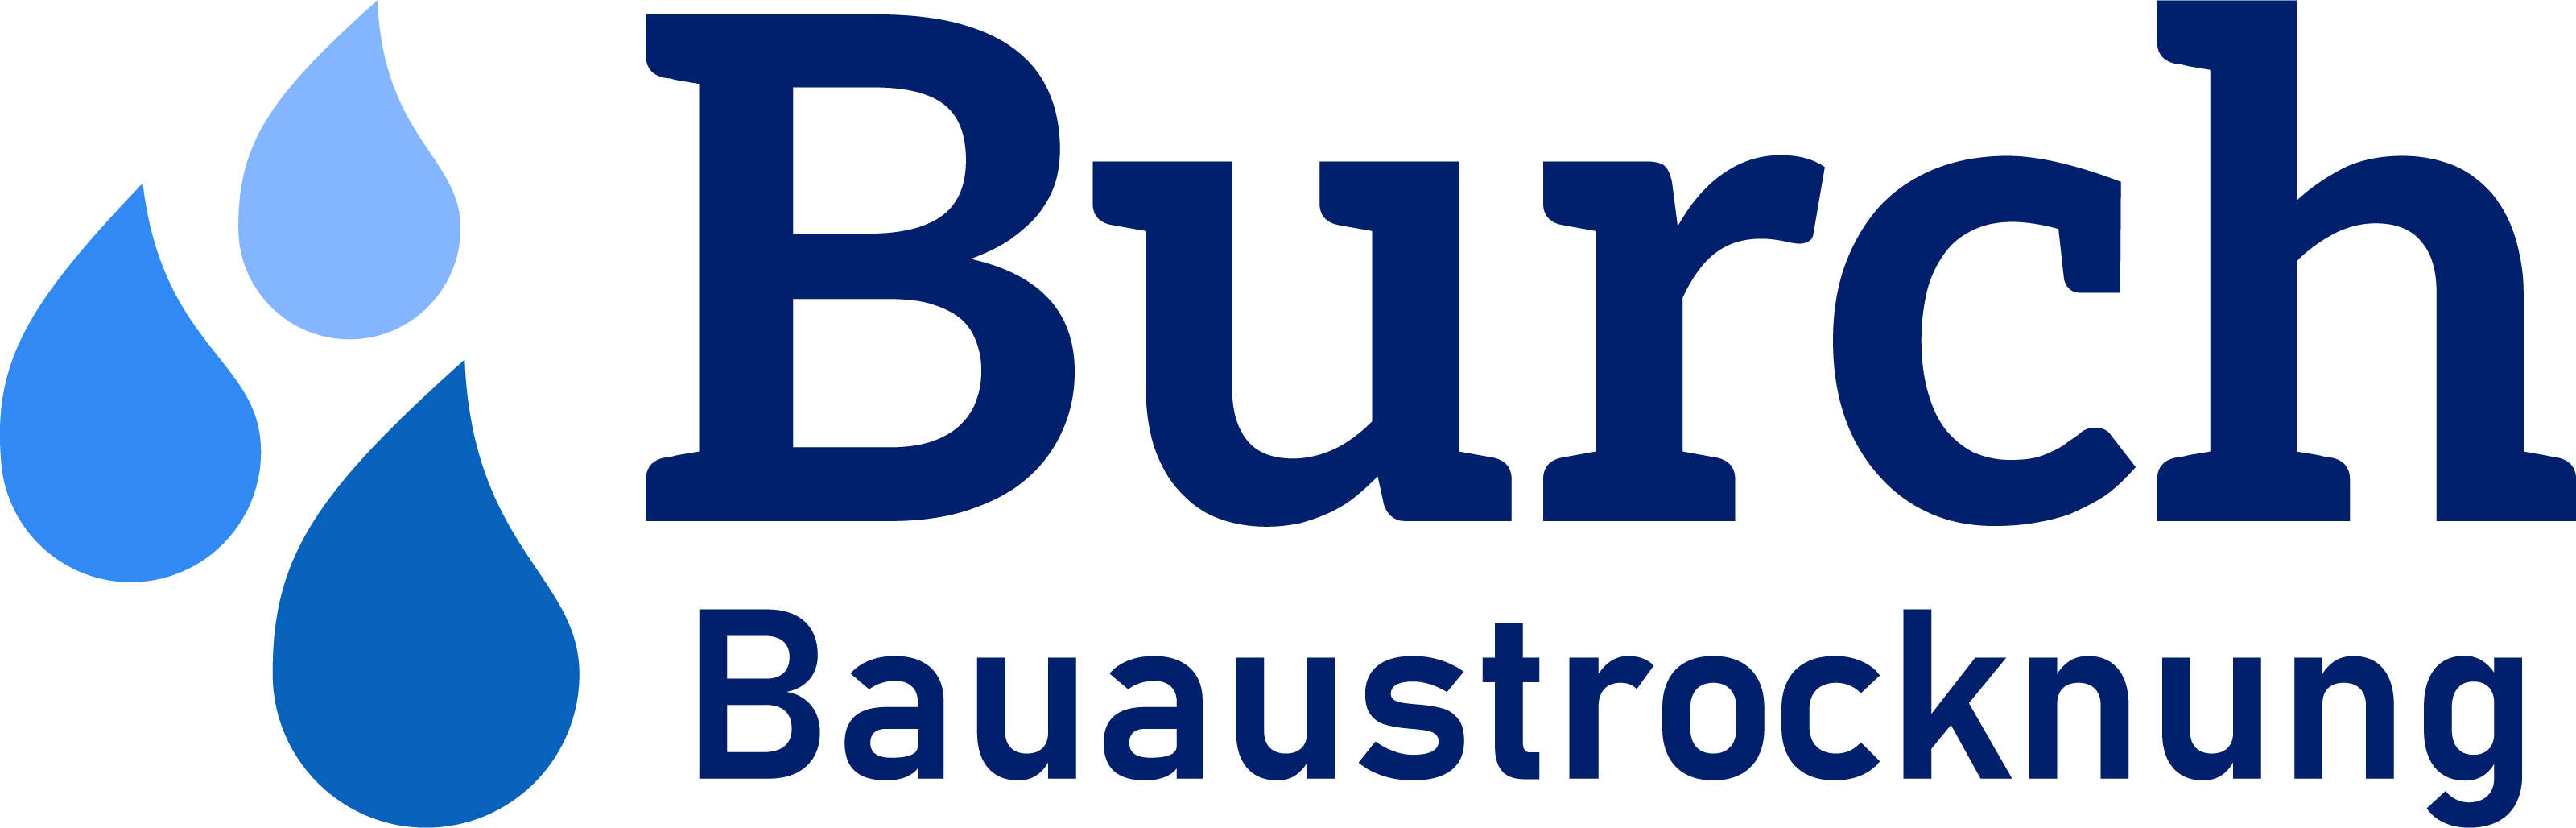 BURCH BAUAUSTROCKNUNG AG